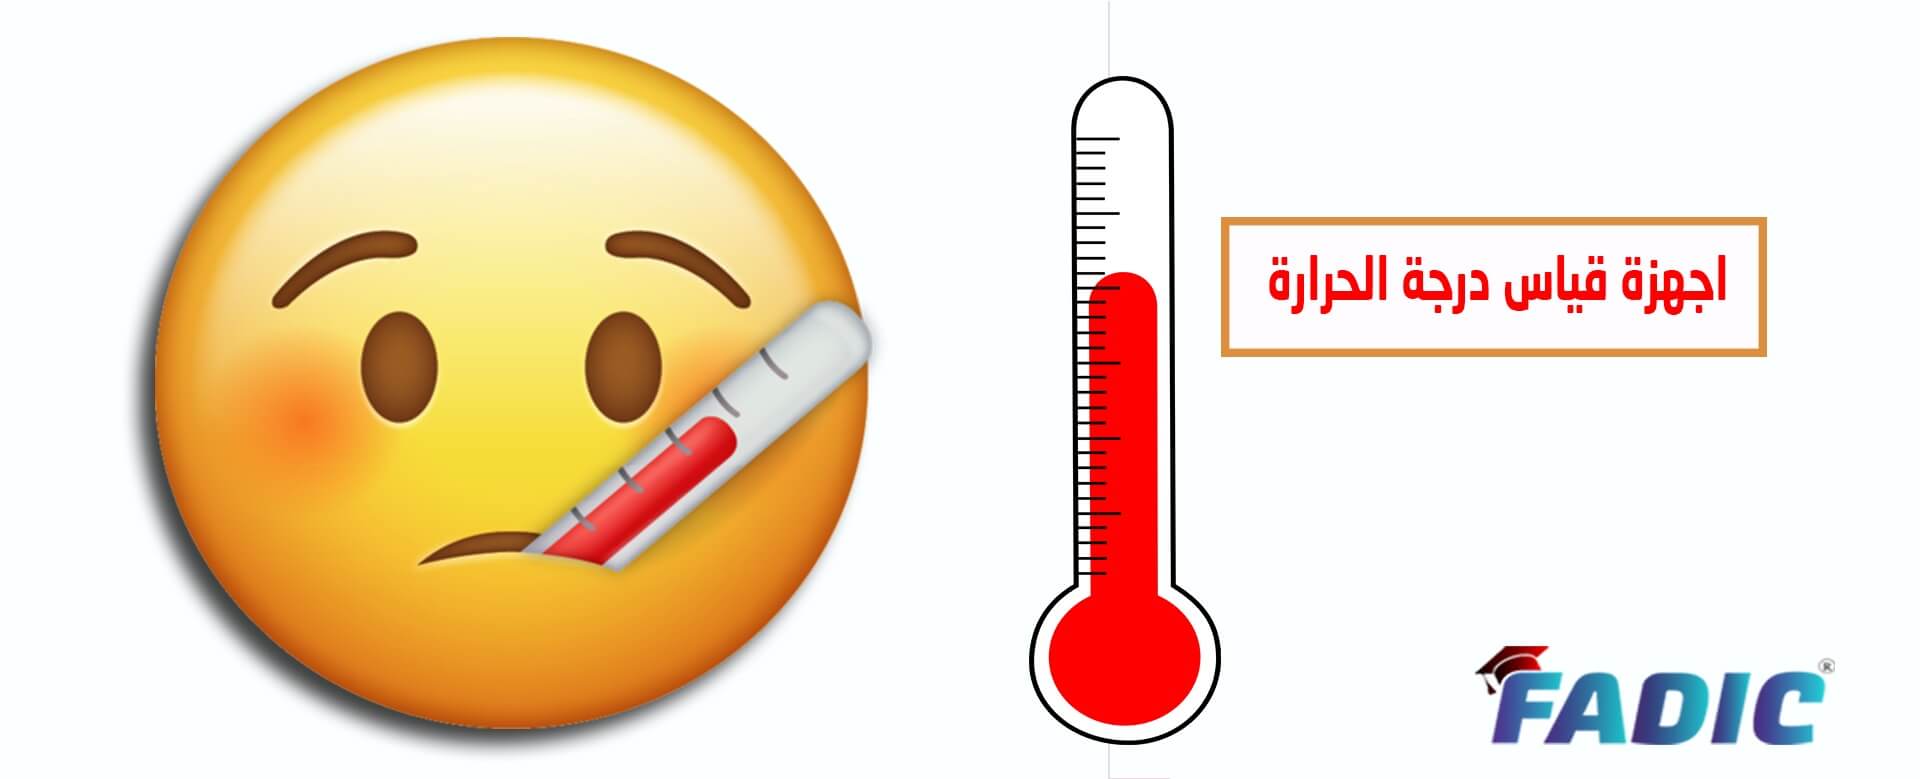 مقياس الحرارة هو الوسيلة الدقيقة لقياس درجة حرارة جسم الإنسان